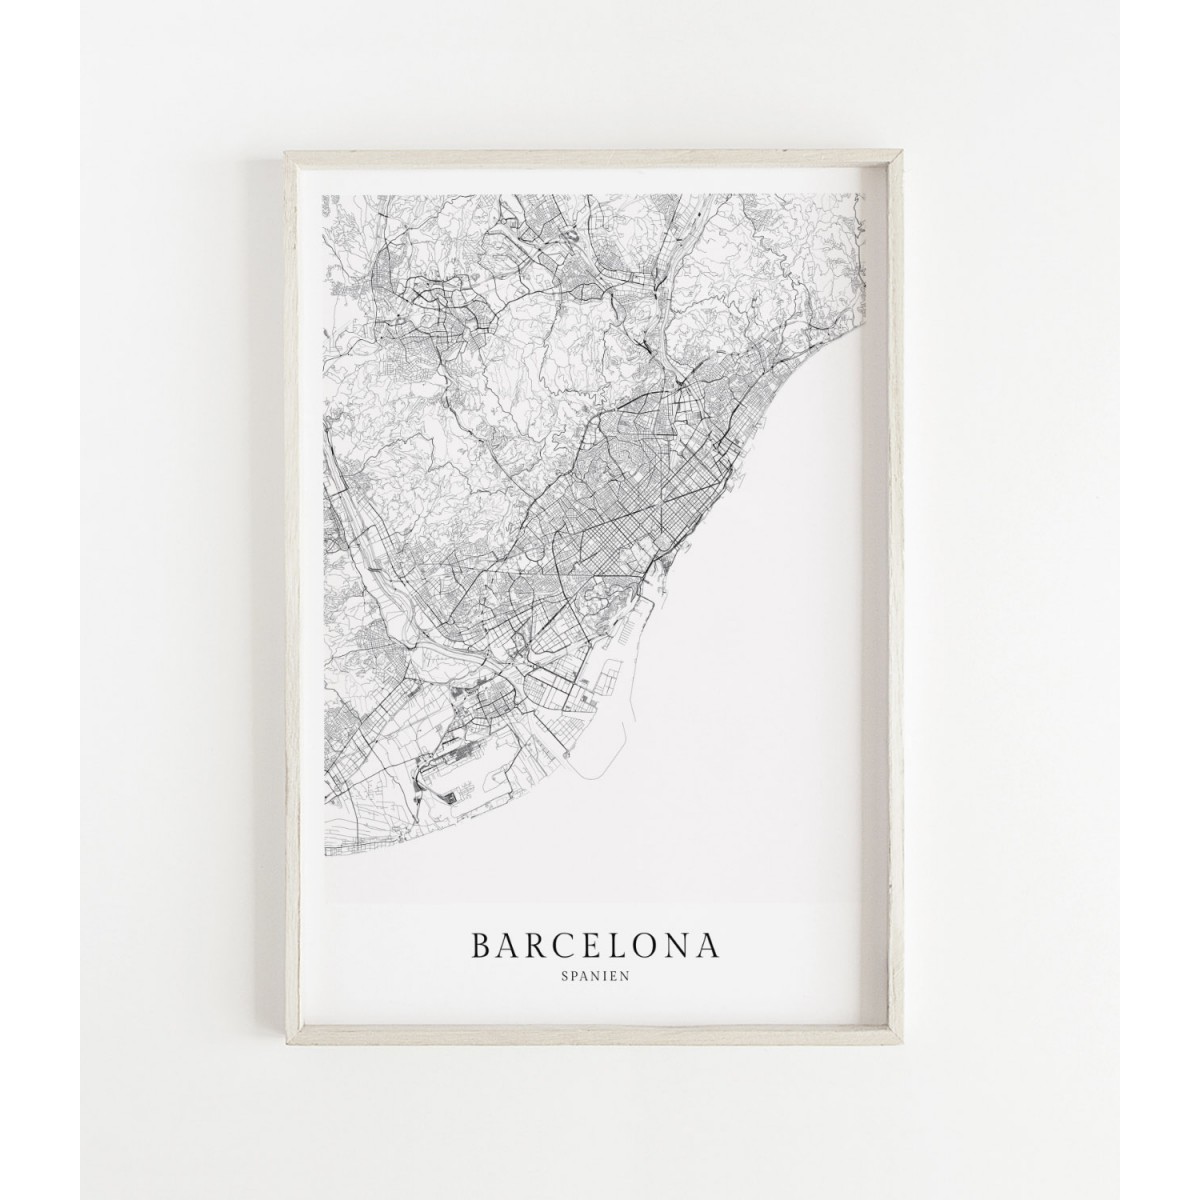 BARCELONA als hochwertiges Poster im skandinavischen Stil von Skanemarie